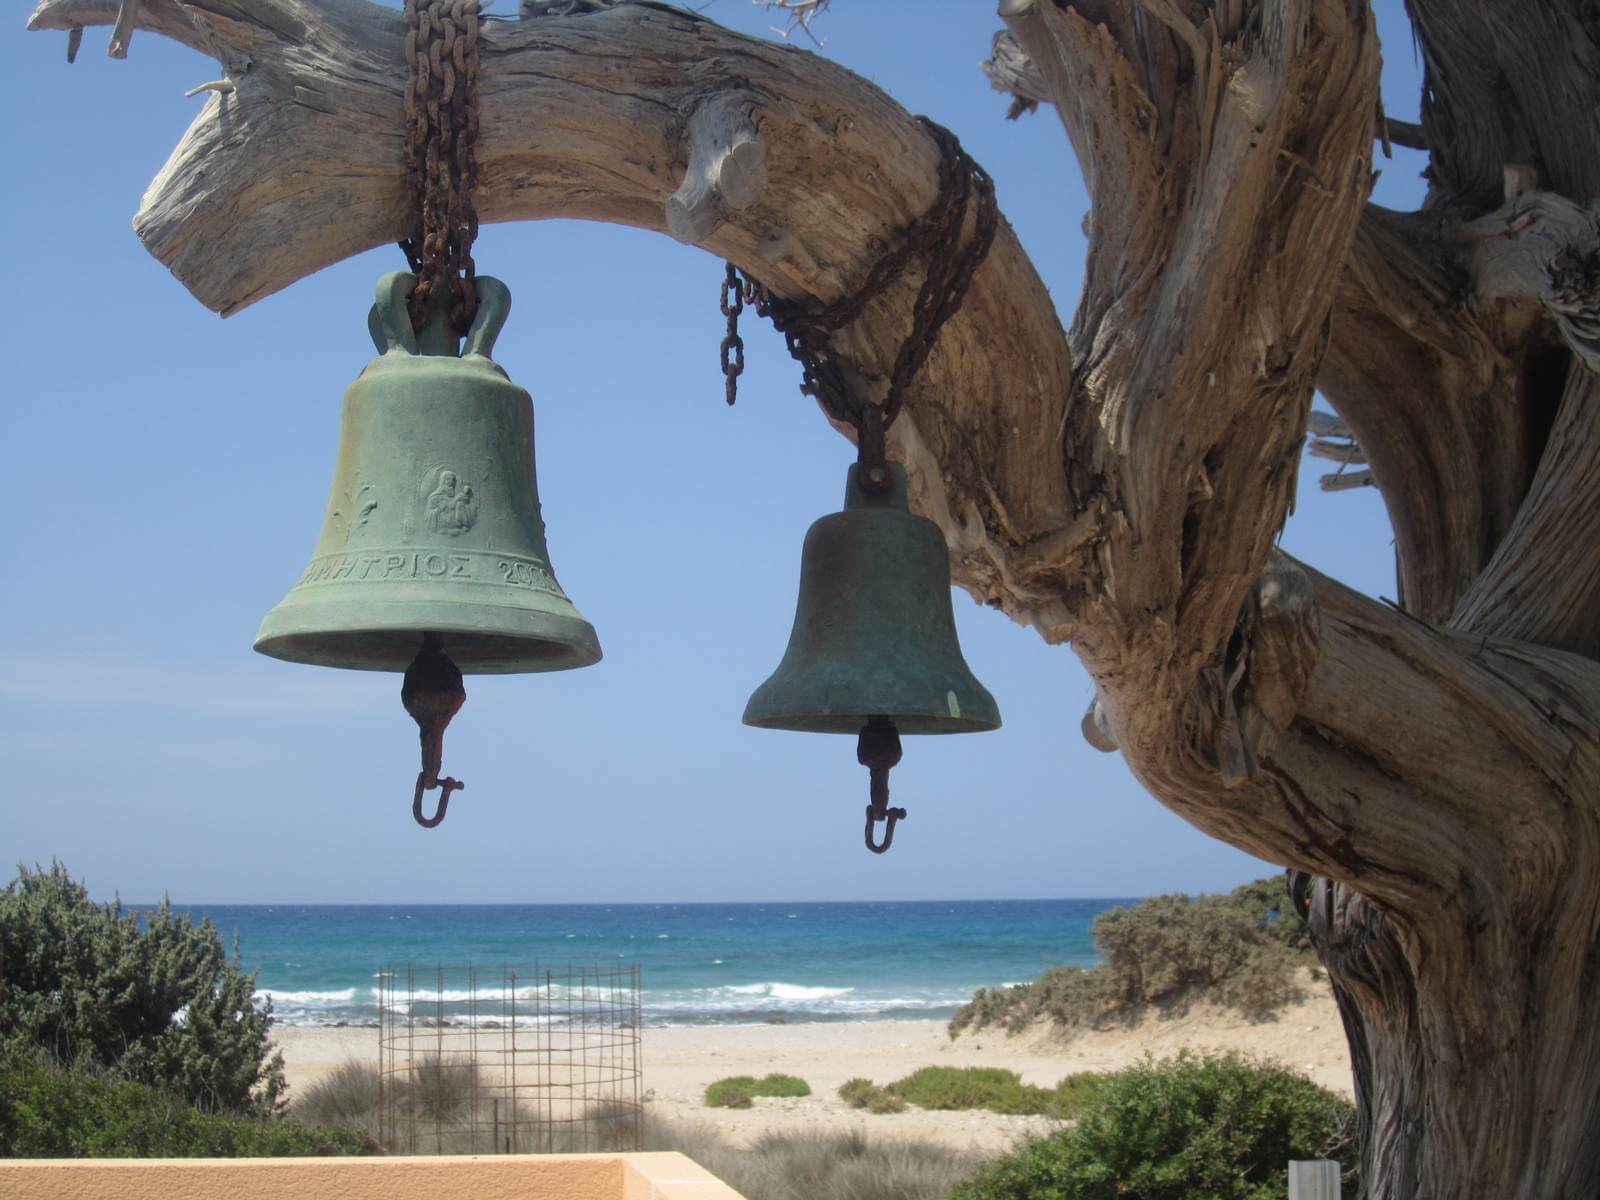 Wandertour zum Strand bei Agios Theologos auf Kos - Lupe Reisen